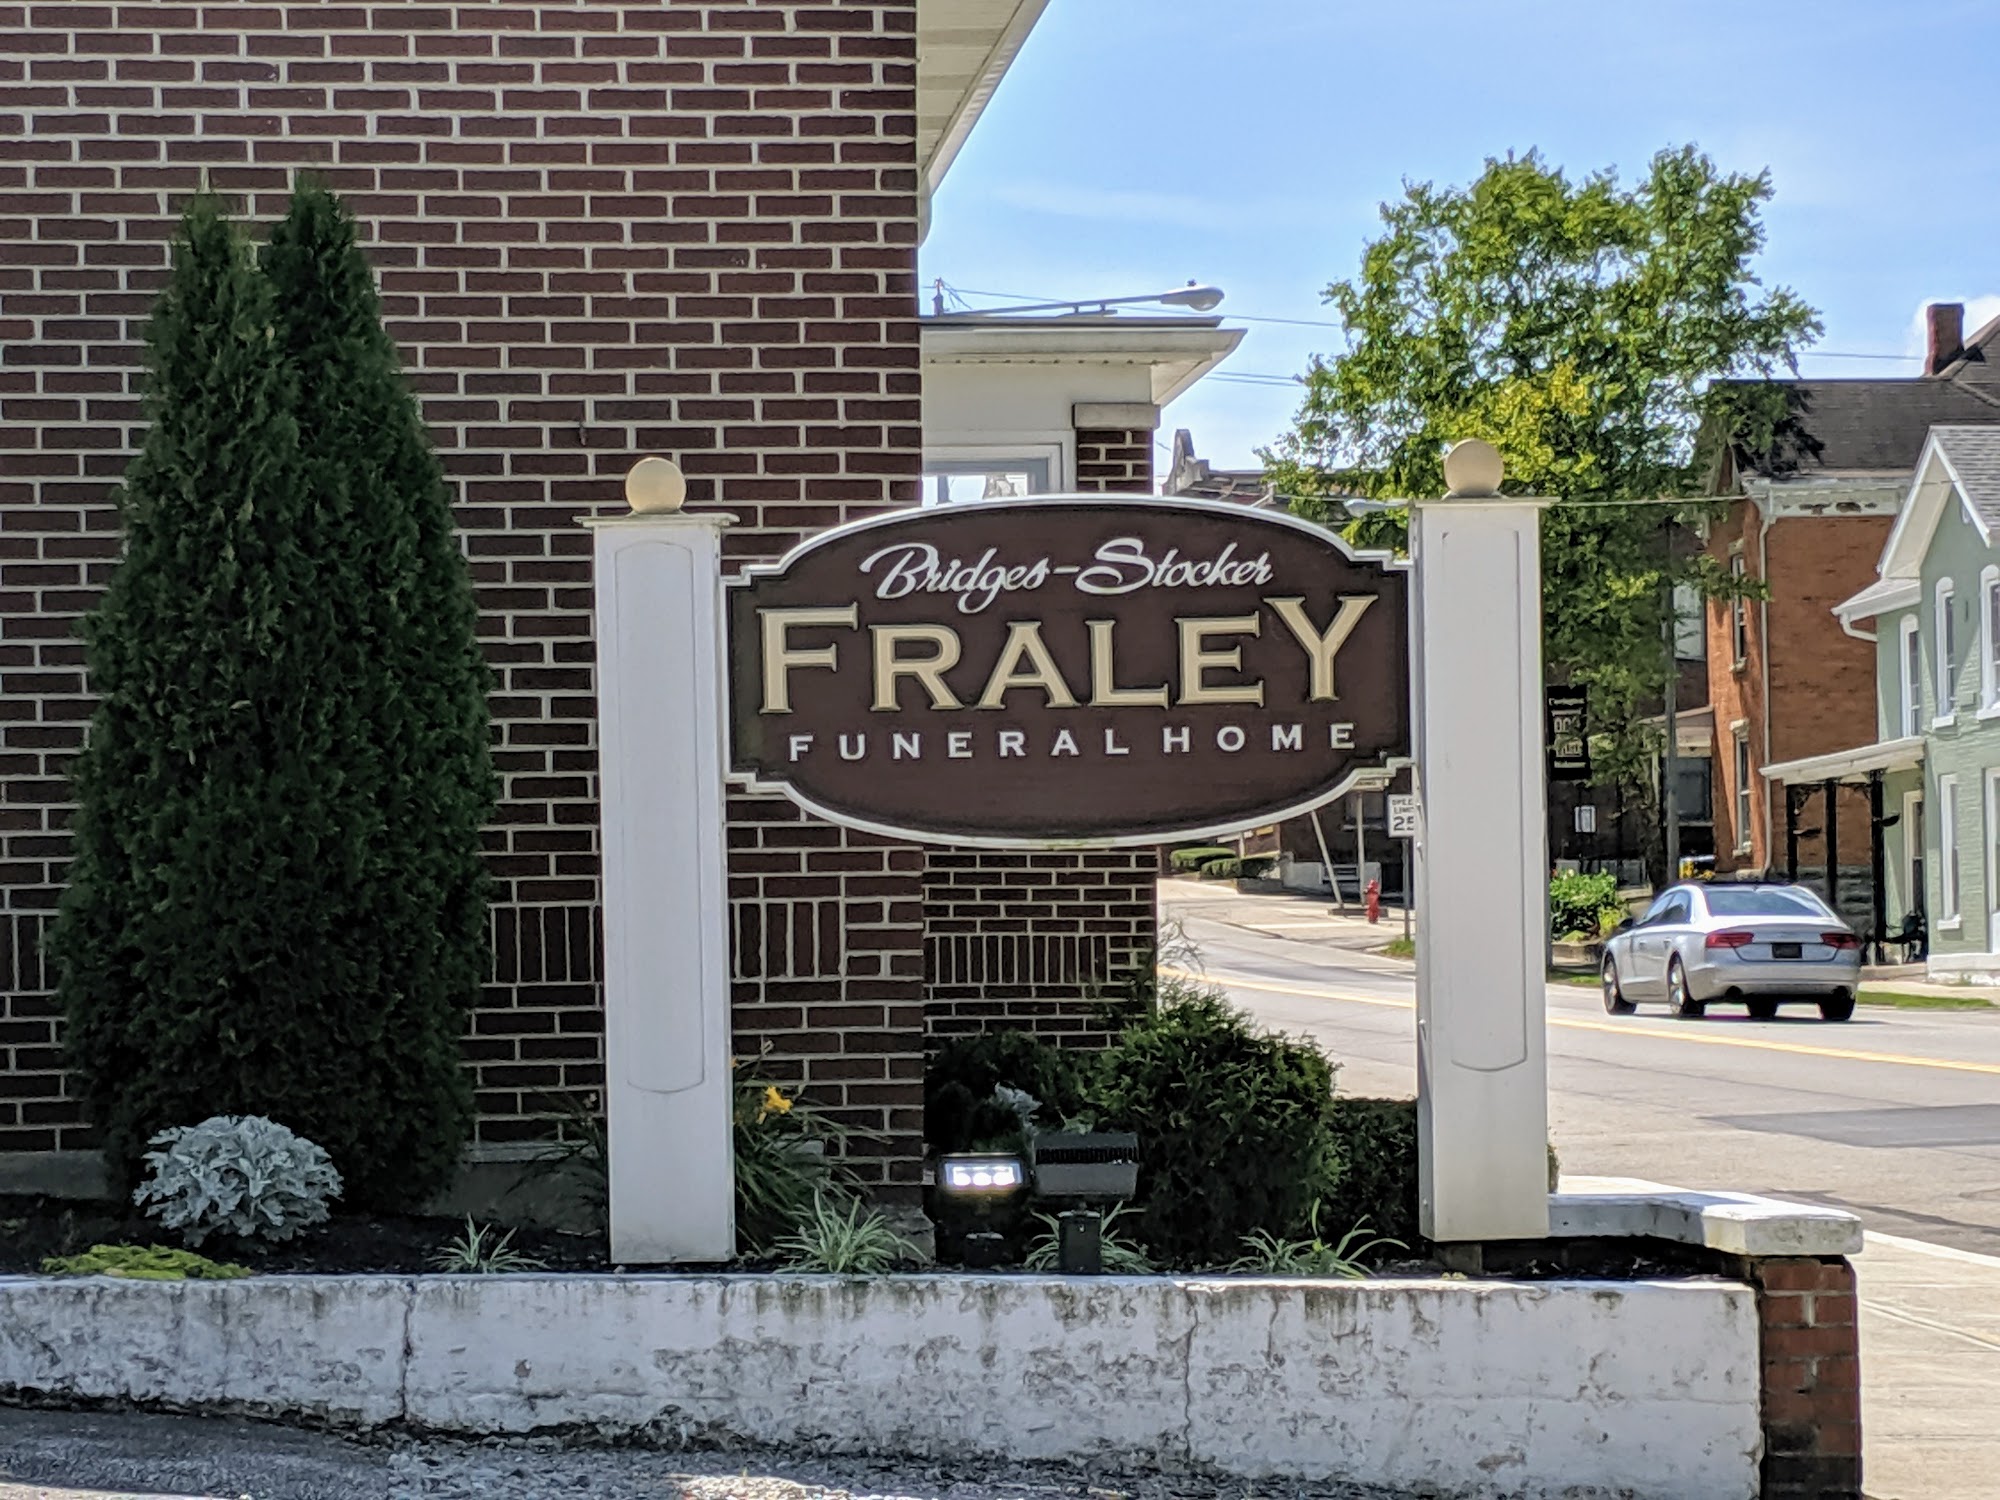 Bridges Stocker Fraley Funeral